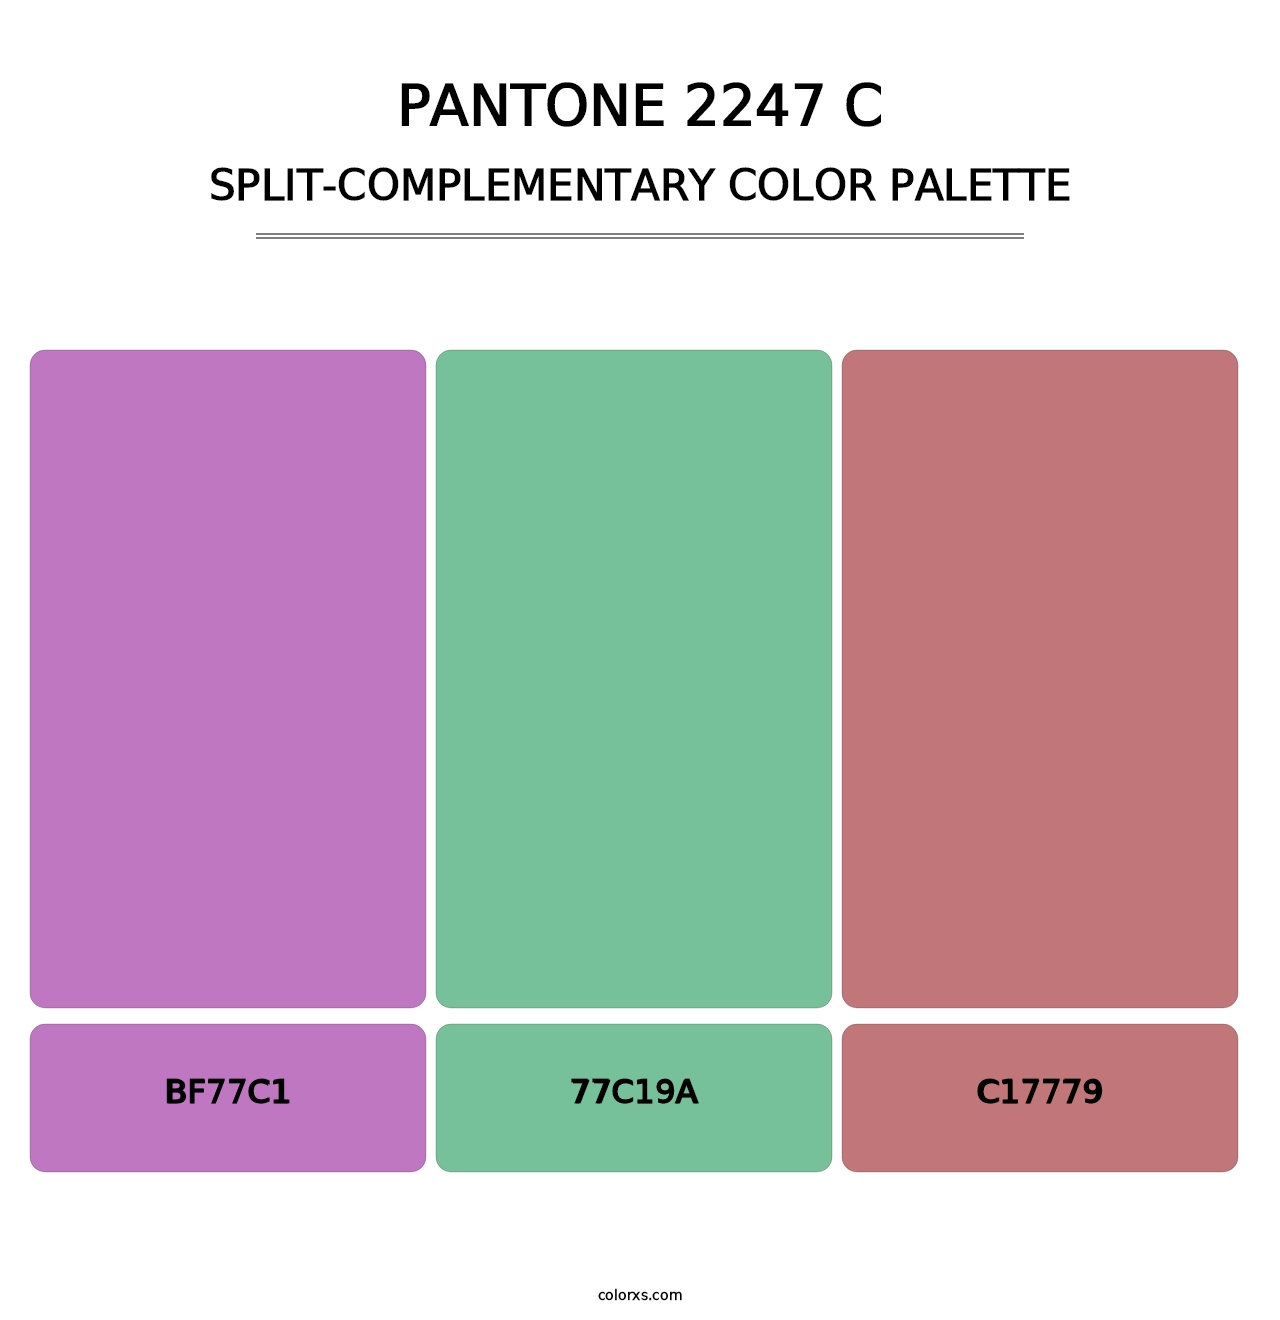 PANTONE 2247 C - Split-Complementary Color Palette